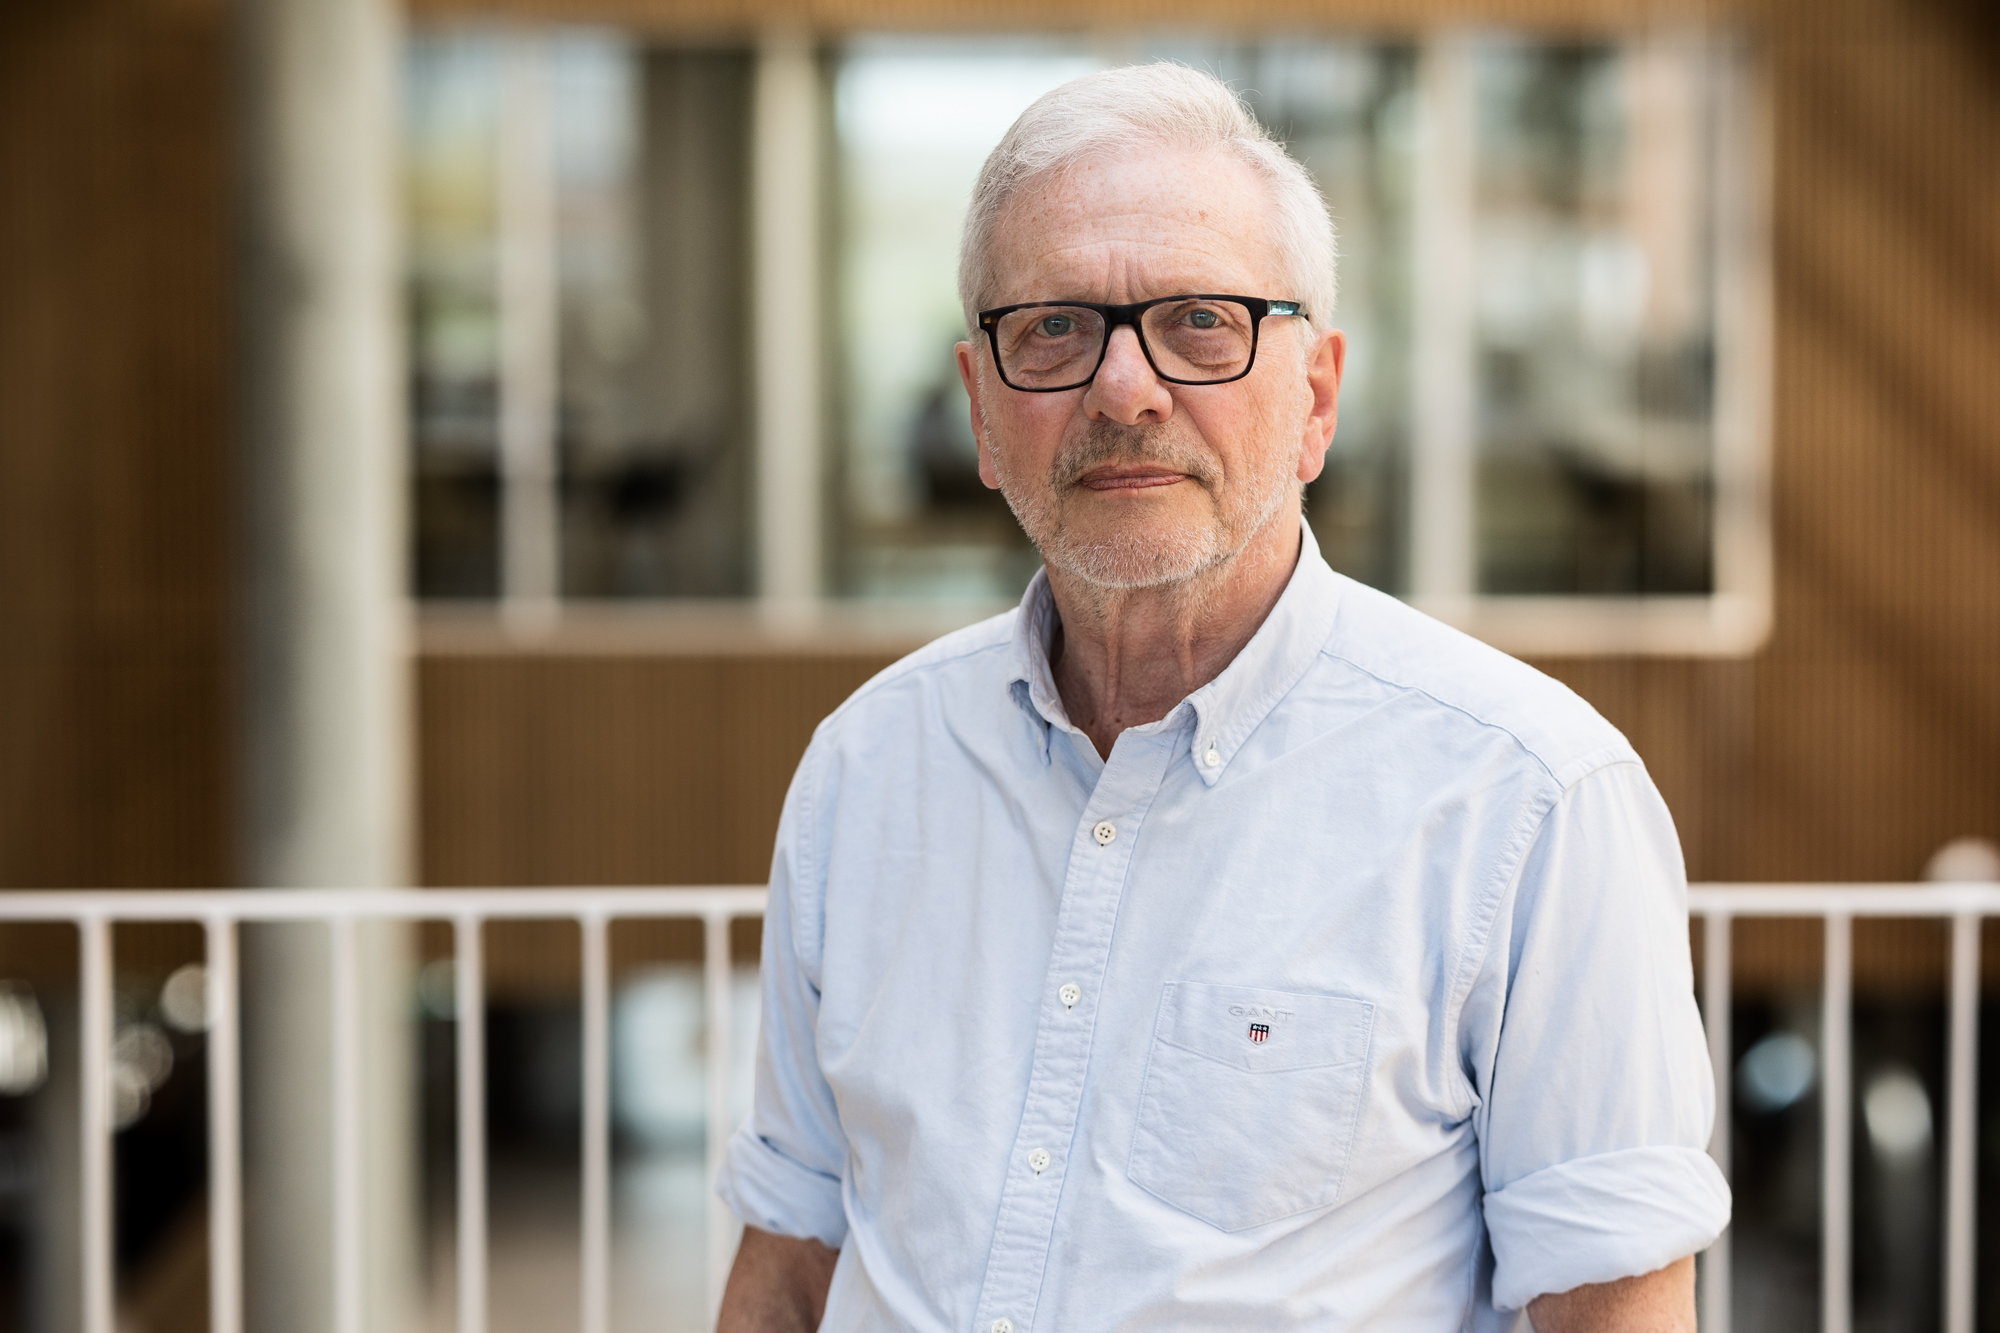 Bjørn Richelsen, Professor, Steno Diabetes Center Aarhus